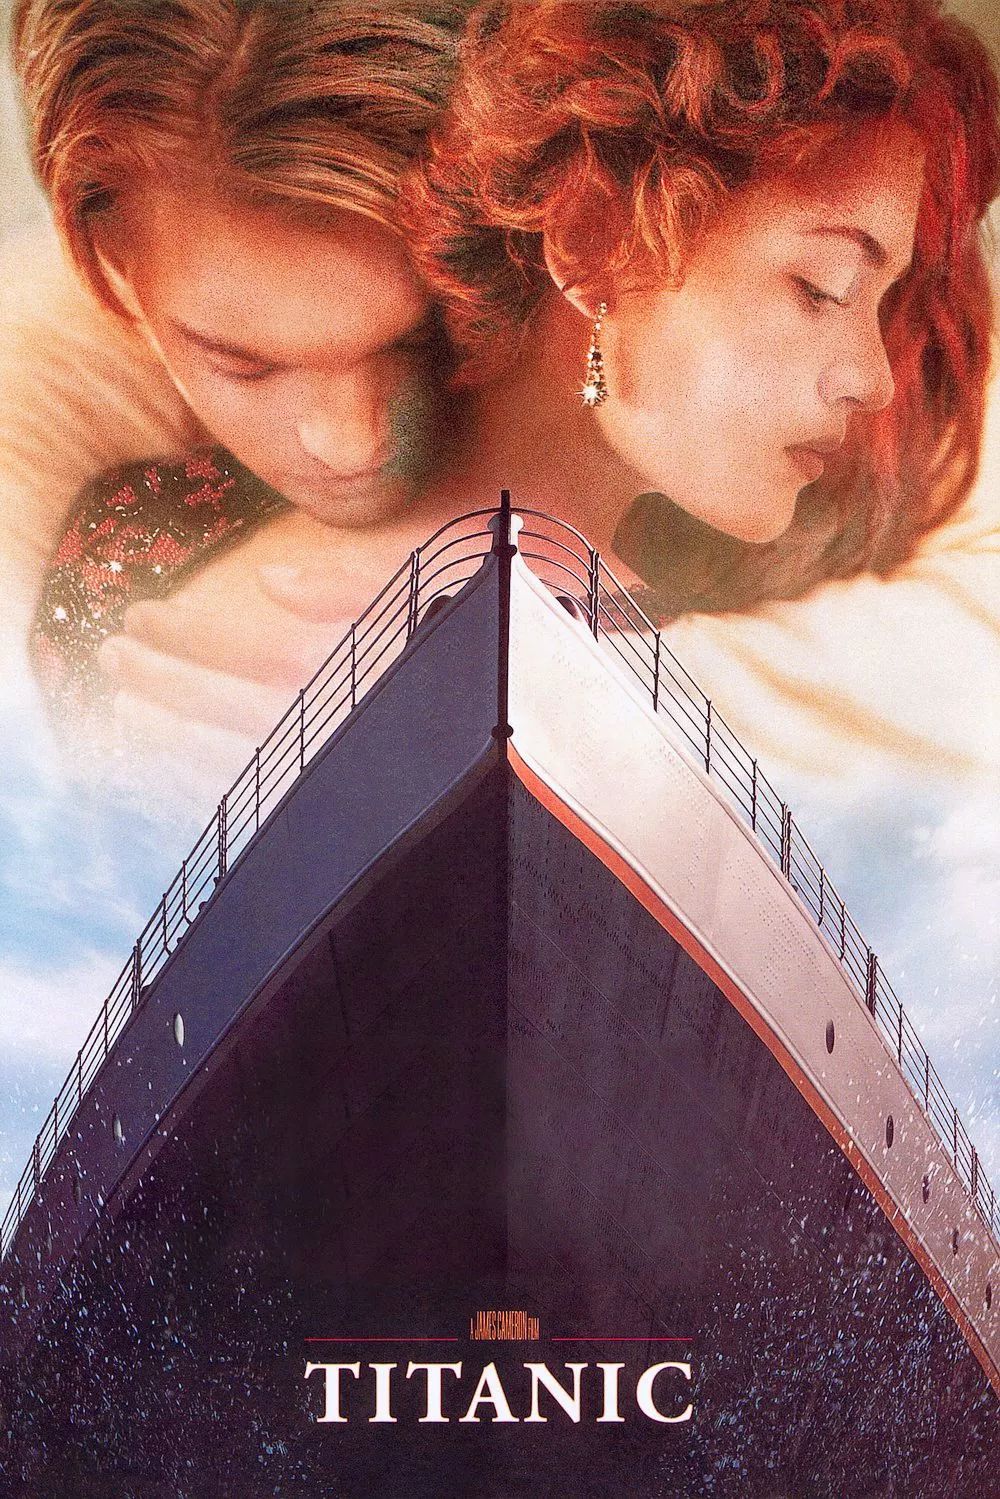 《泰坦尼克号》上映20周年,那些年被我们遗忘的细节!